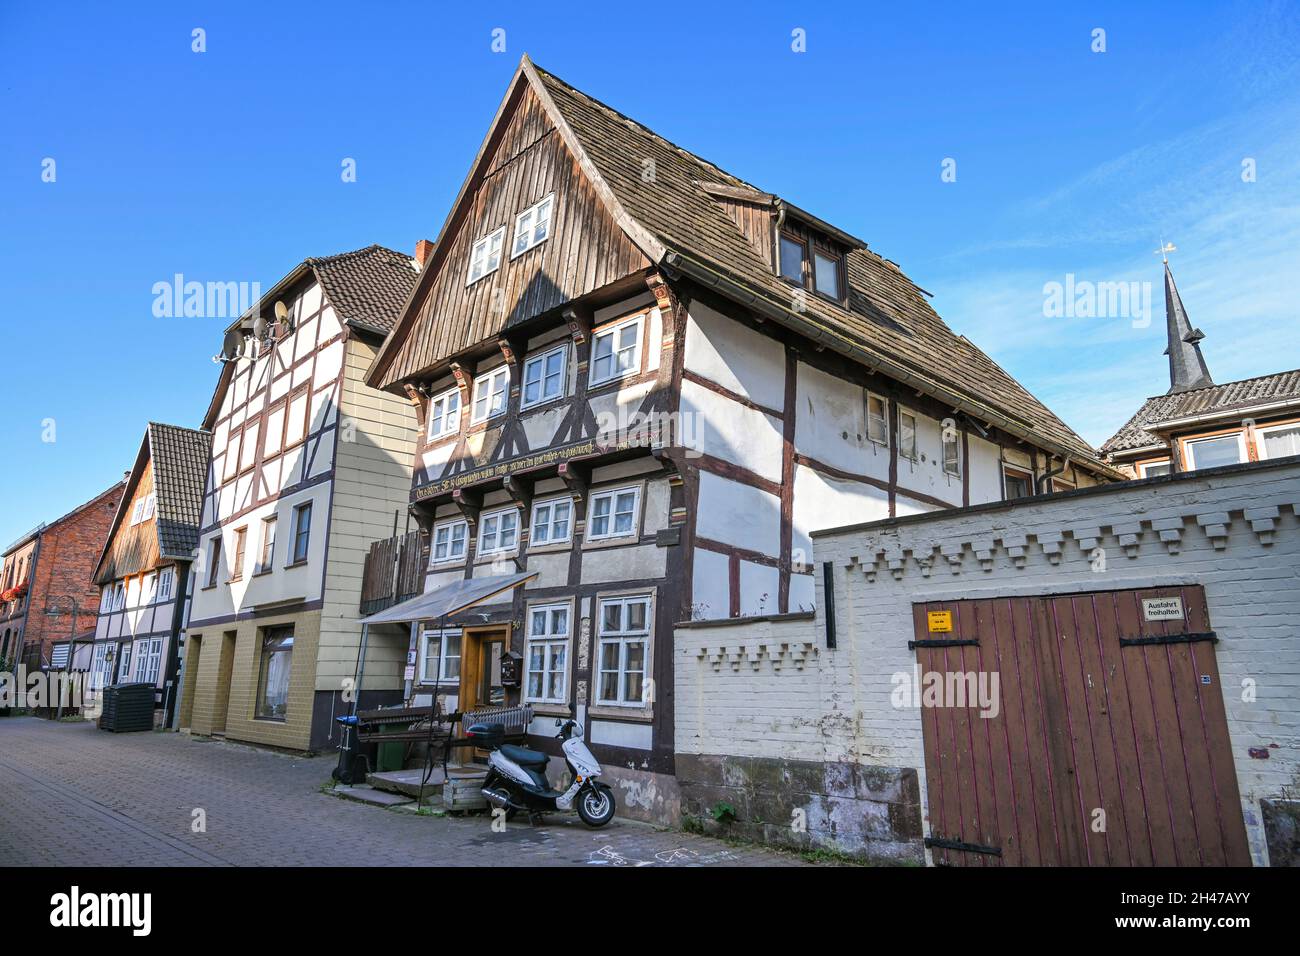 Zweitältestes Bürgerhaus von 1550, Homburgstraße 50, Münchhausenstadt Bodenwerder, Niedersachsen, Deutschland Stock Photo